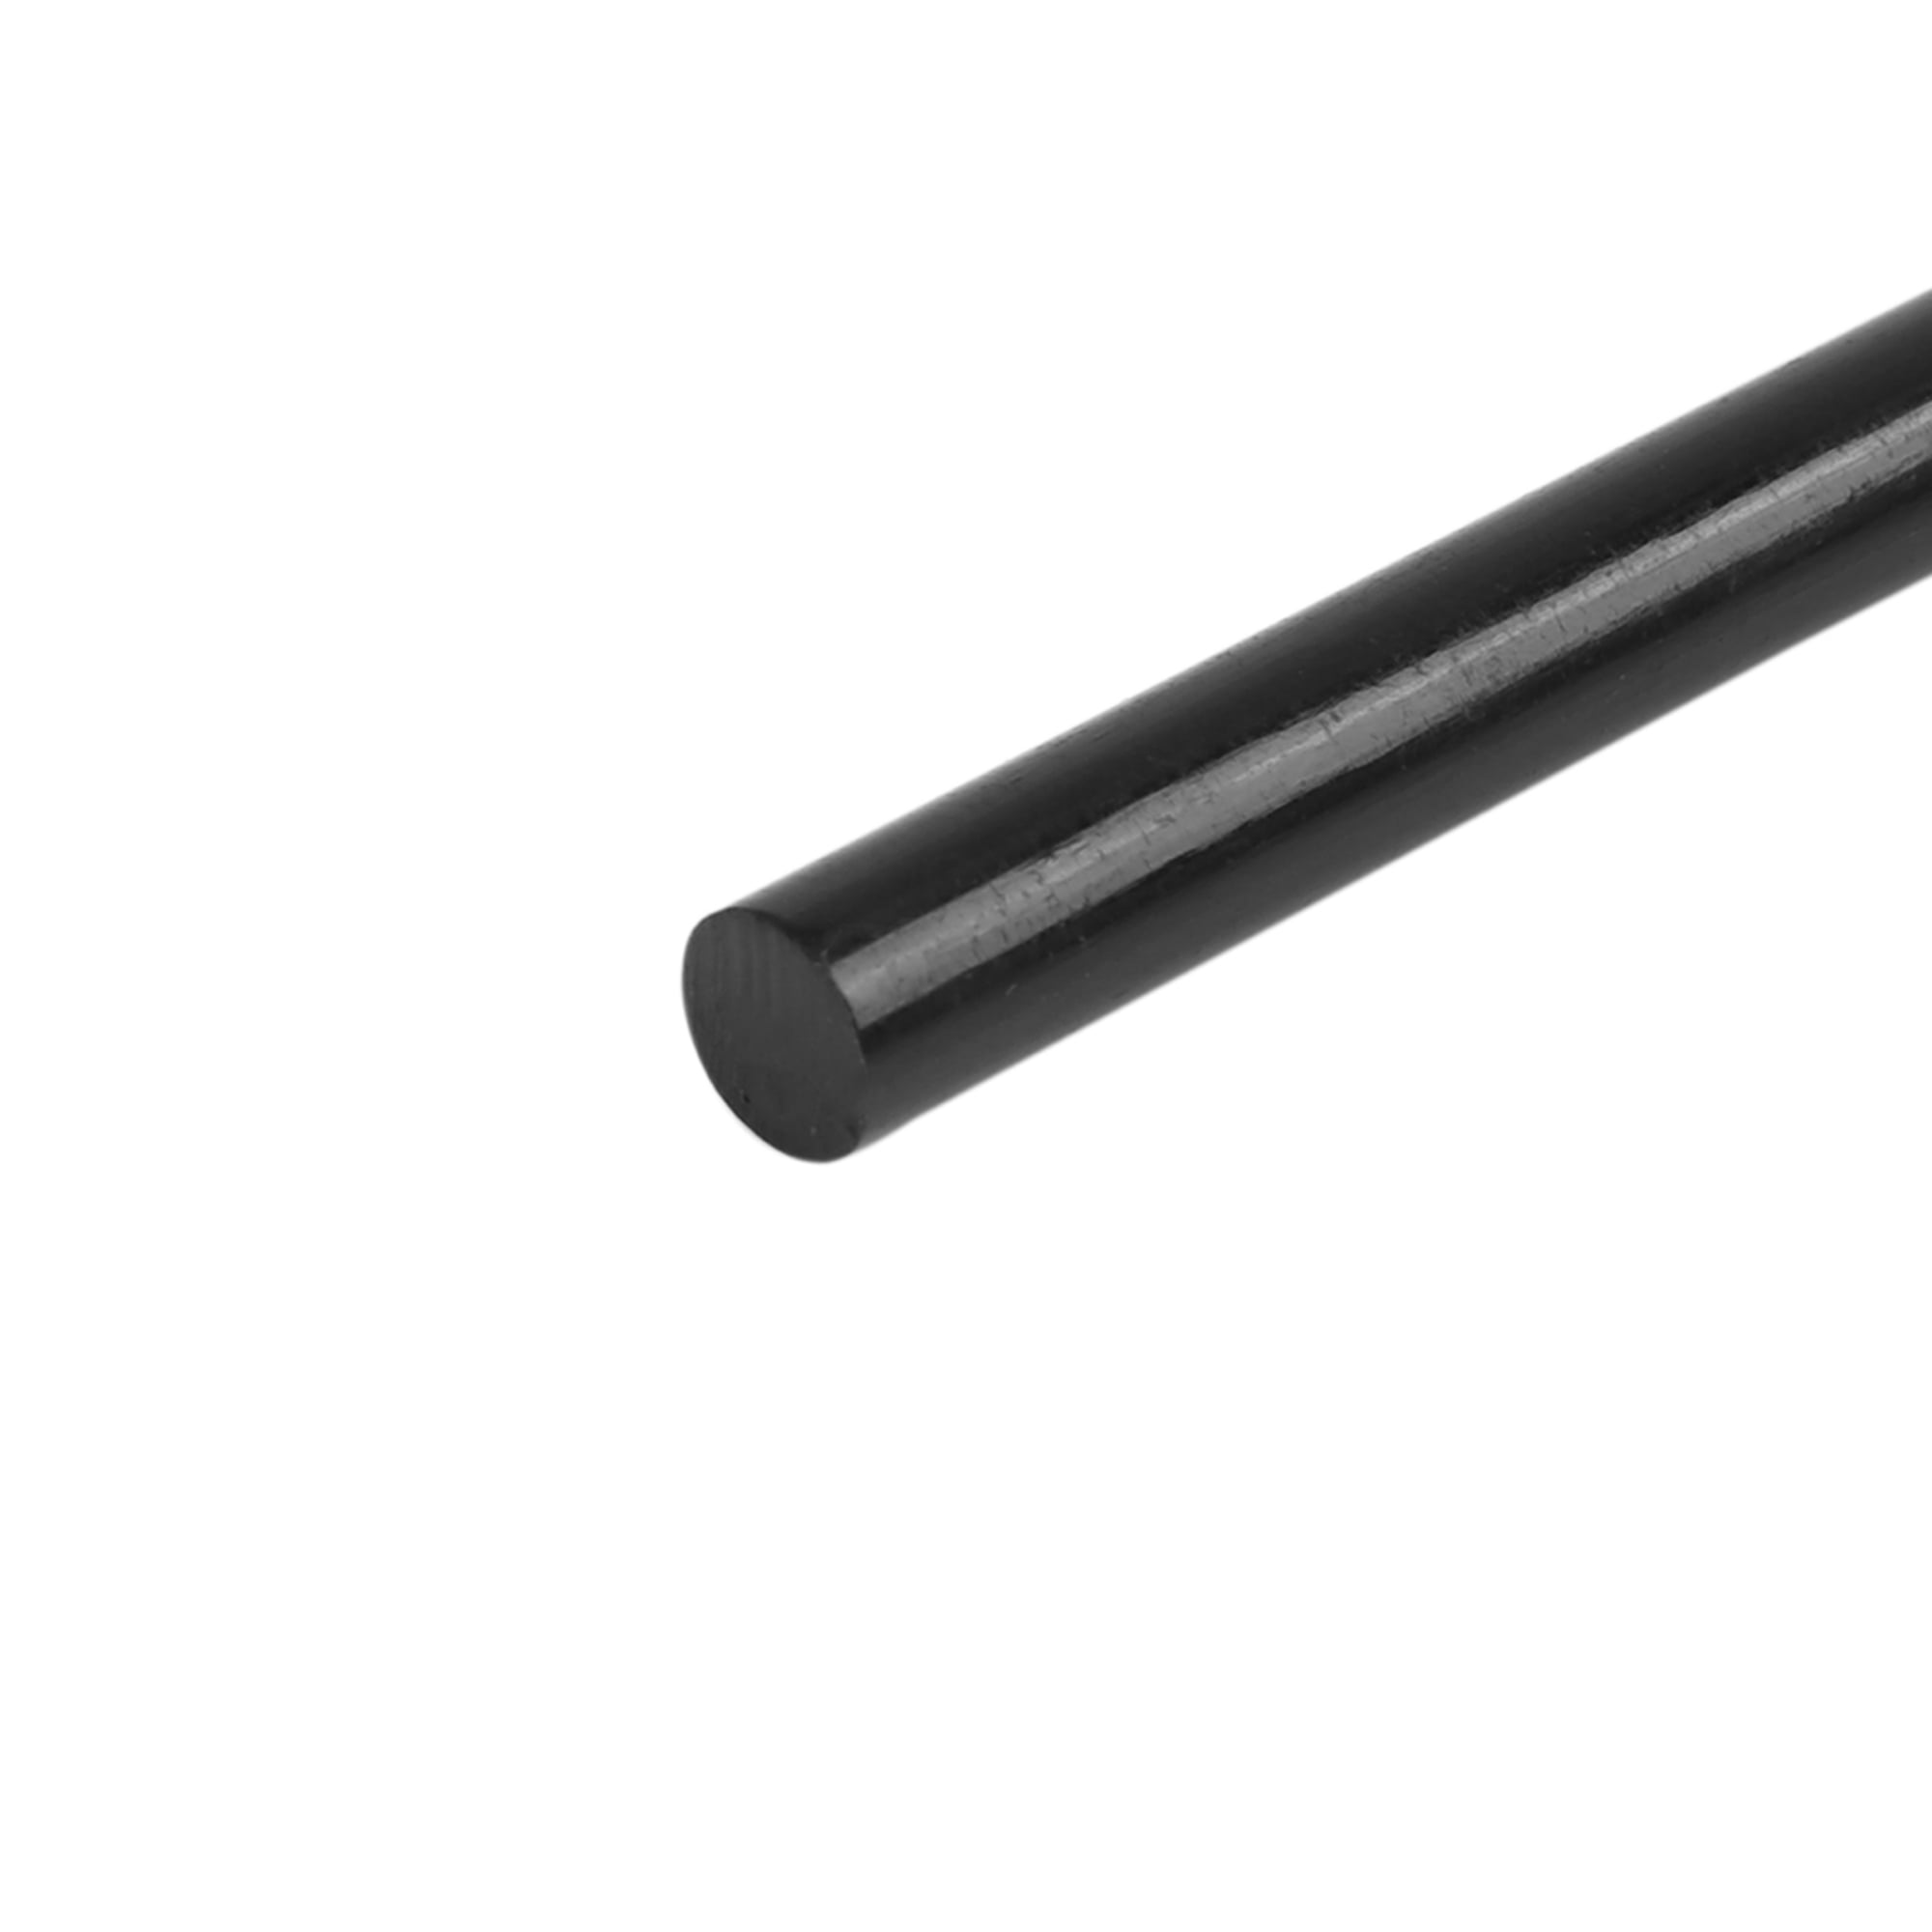 PLASTICS WOOD METAL Hot Black Melt Glue Sticks Dent Repair Crafts  Accessories $9.90 - PicClick AU